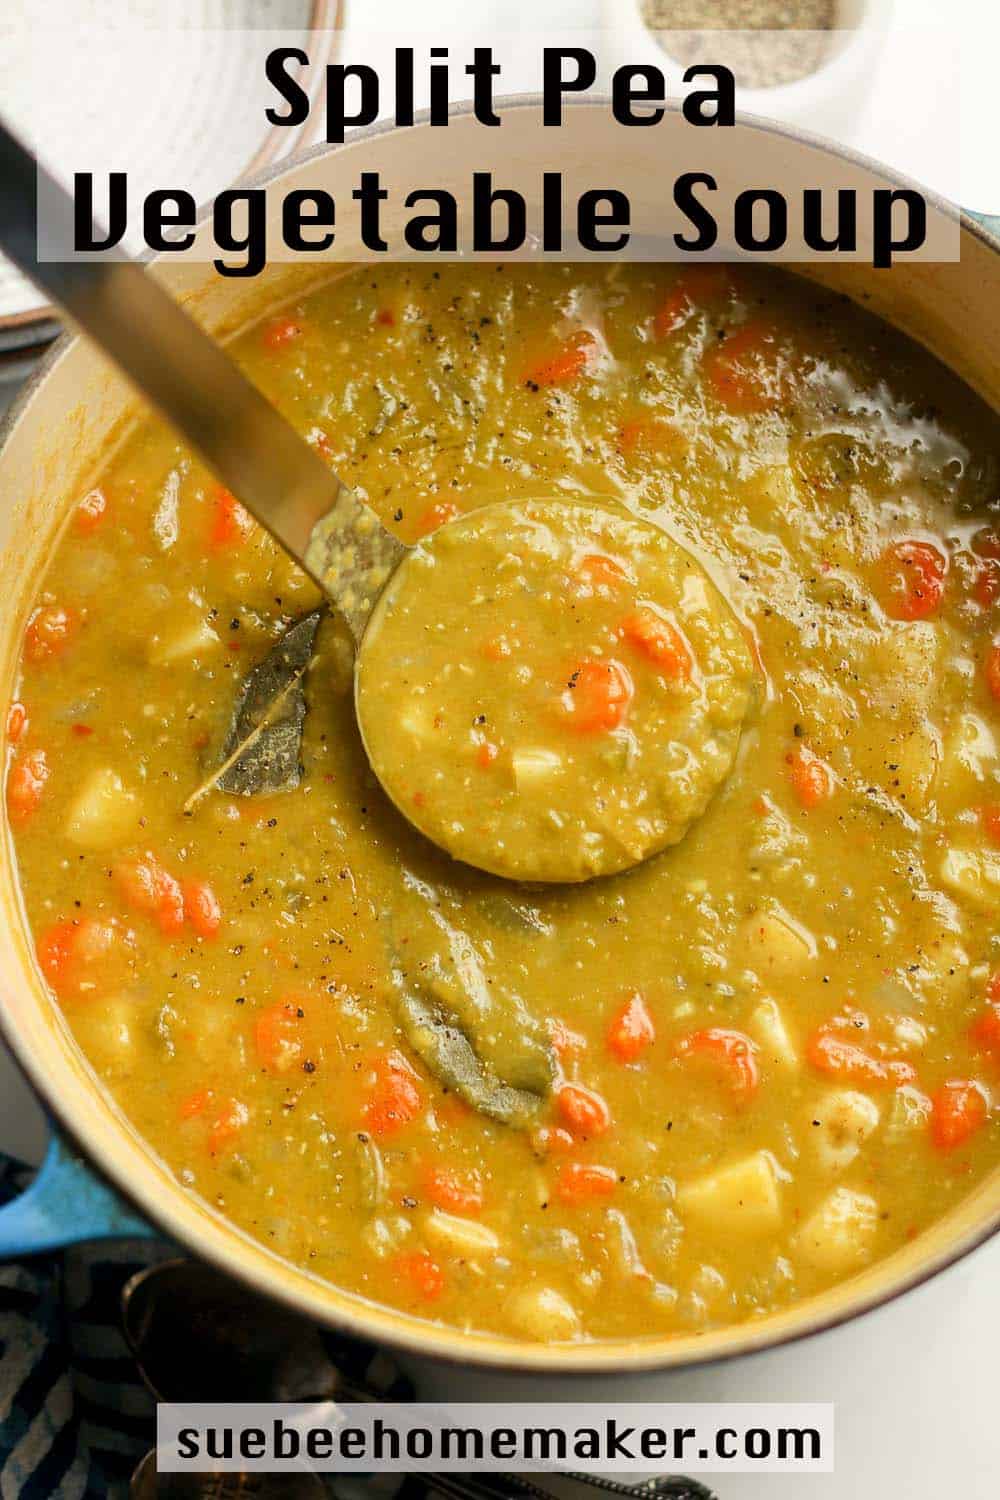 A pot of the split pea vegetable soup.